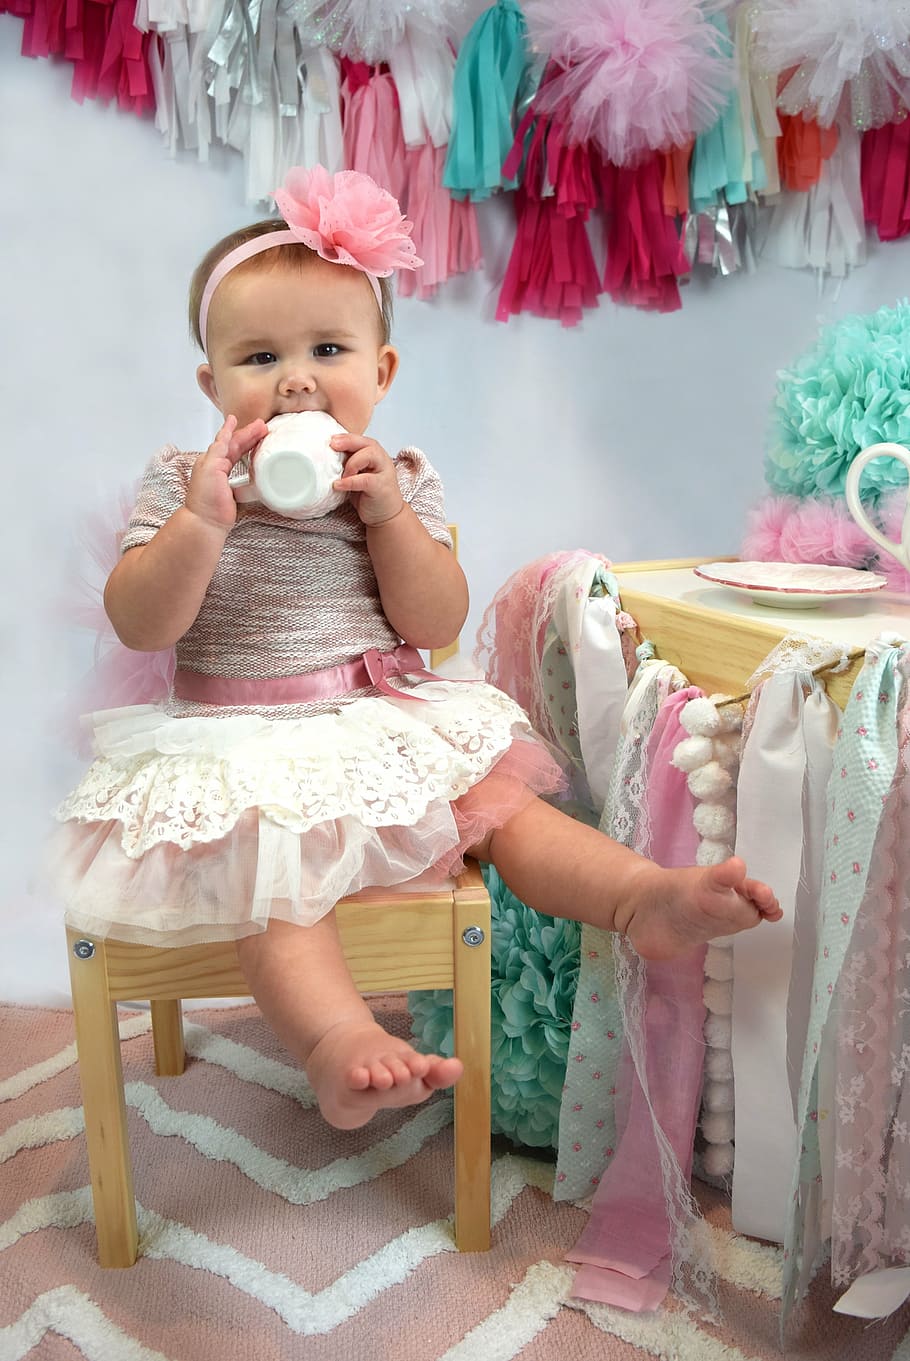 女の子, 身に着けている, ピンク, 白, チュチュドレス, お茶のモチーフの写真, 撮影, 1歳, 幼児, 赤ちゃん